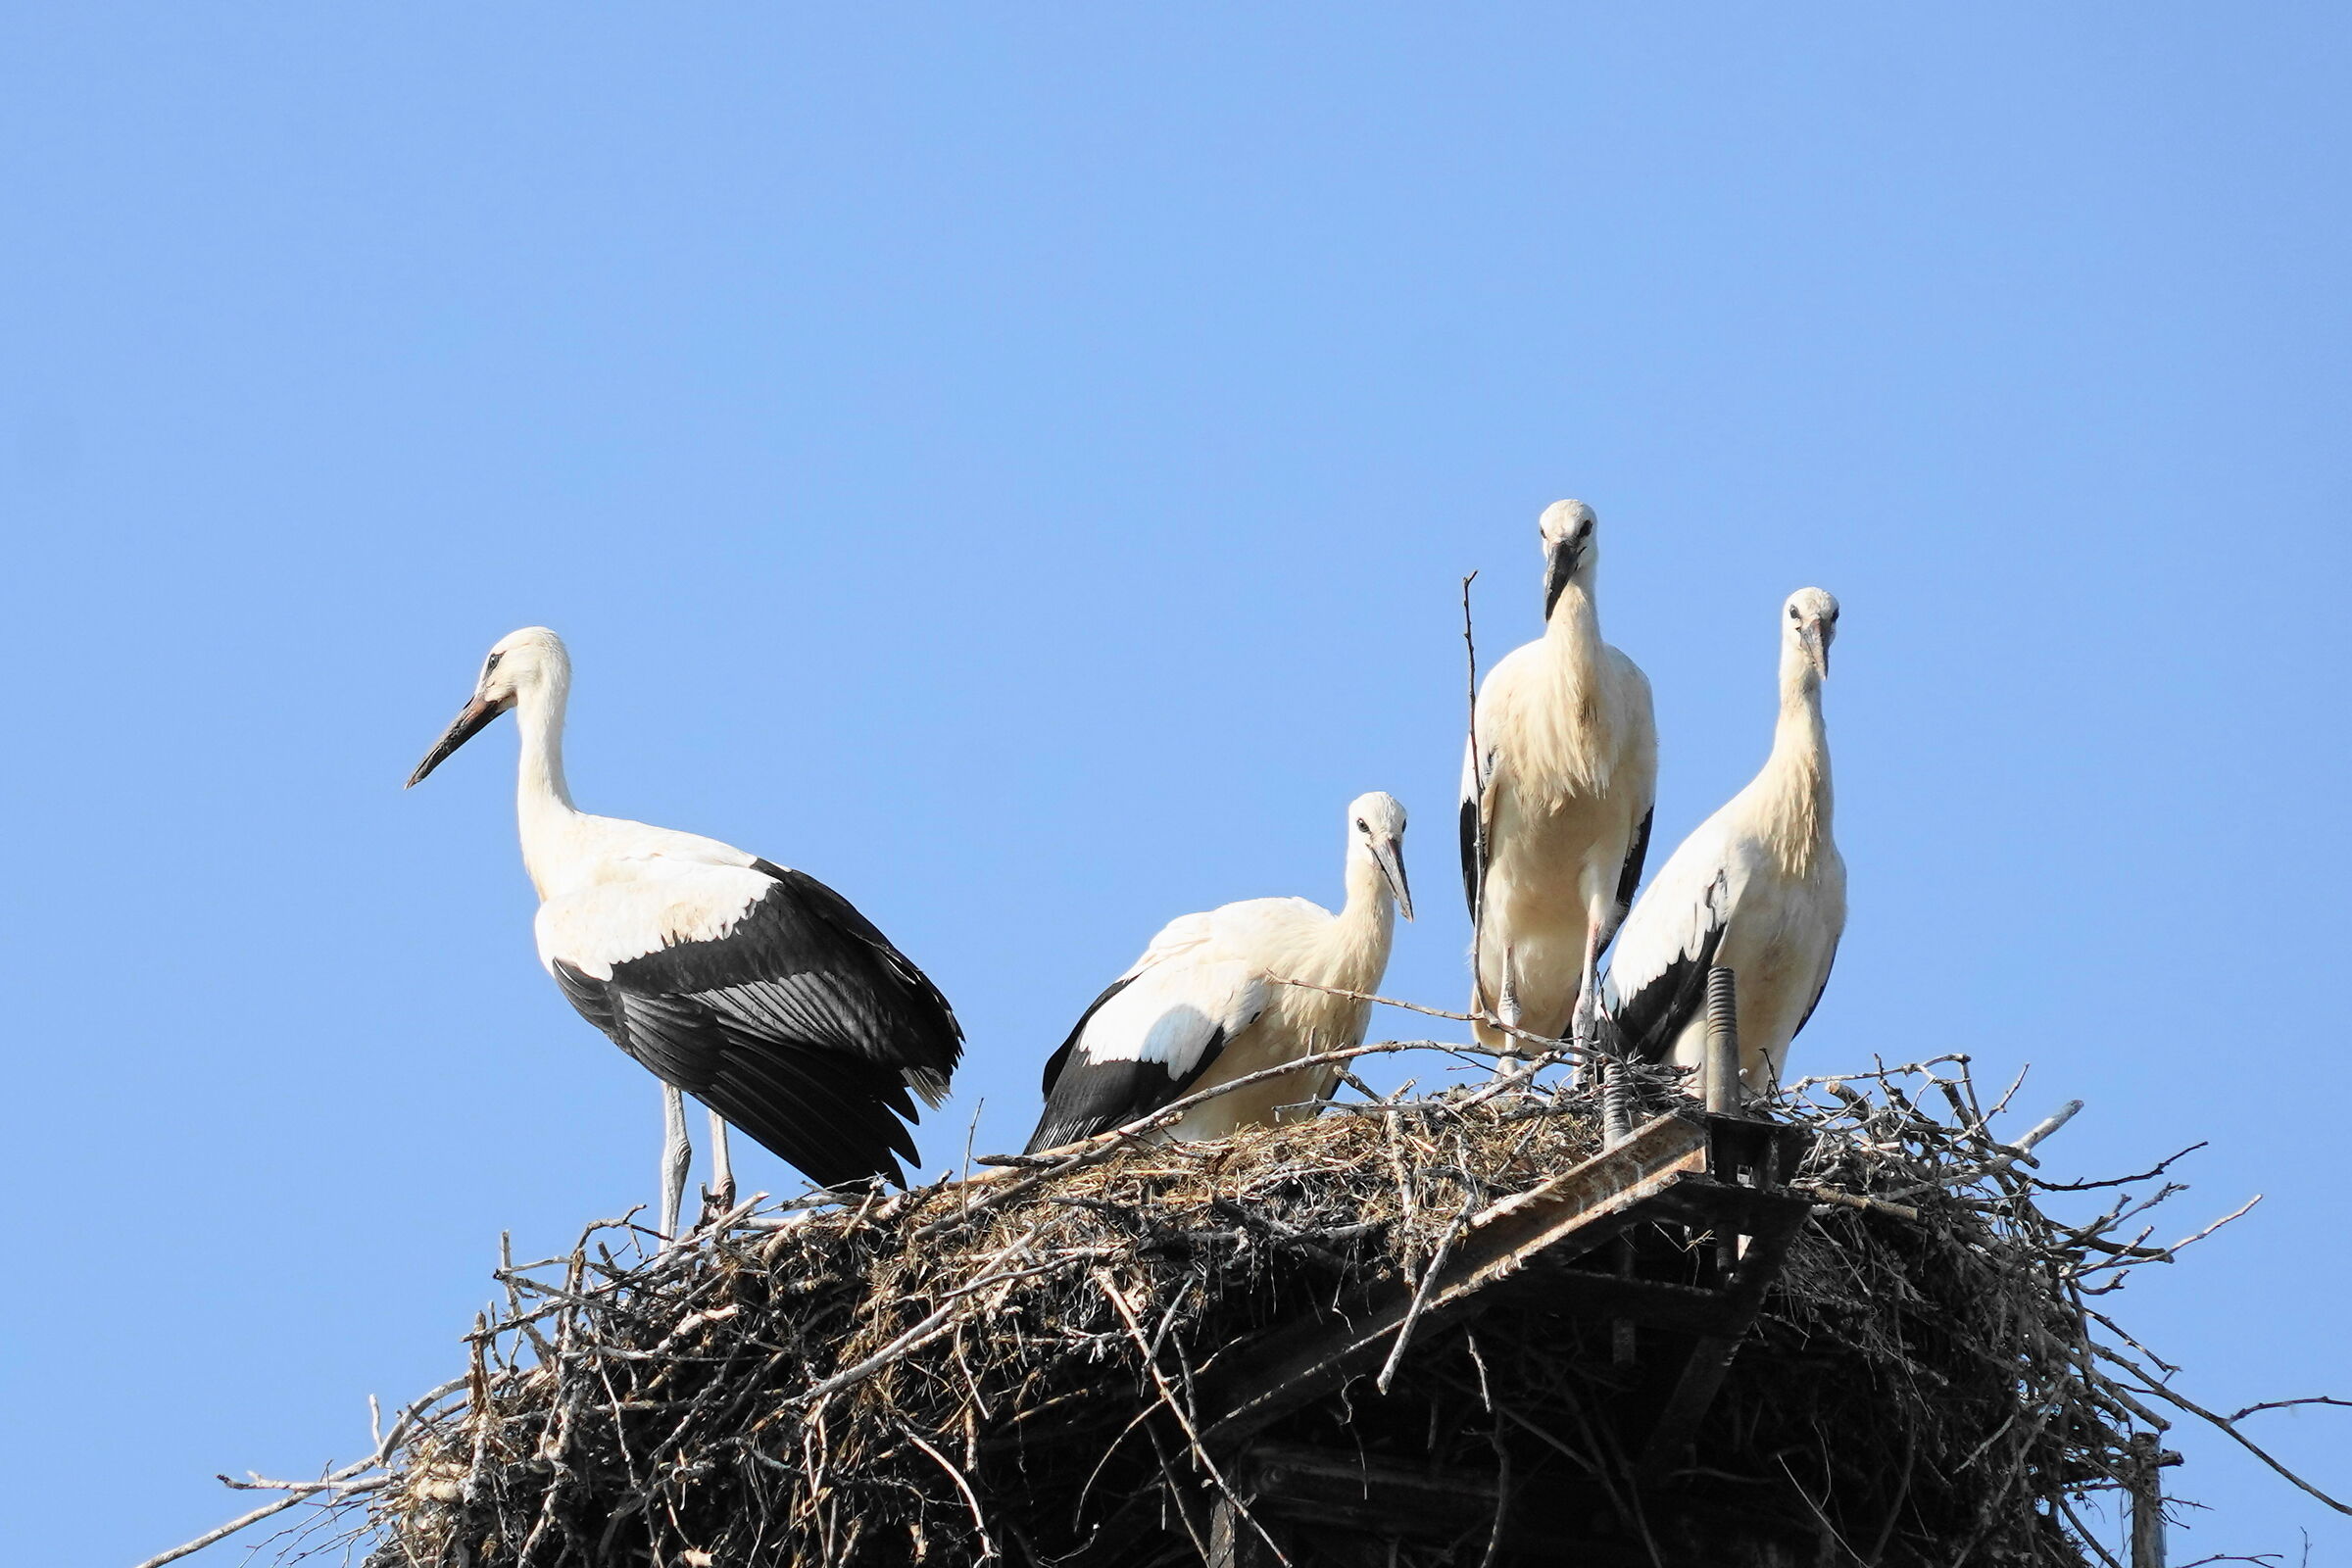 beautiful brood of storks...